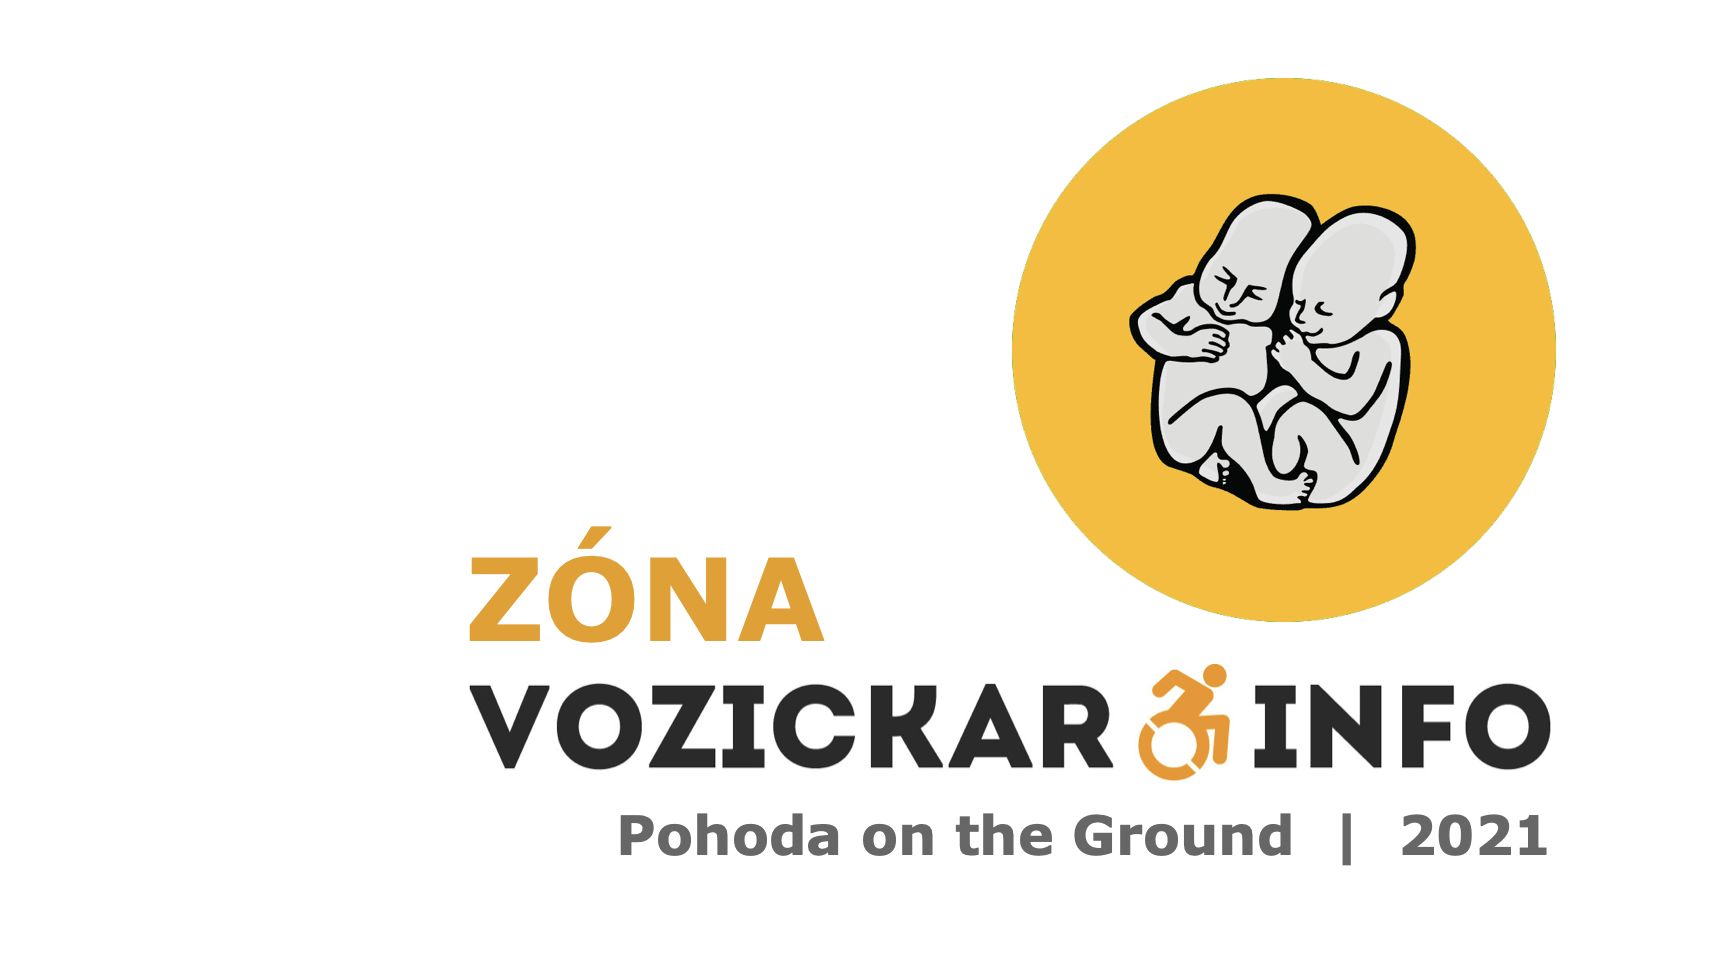 Zóna Vozickar.info festival Pohoda on the Ground